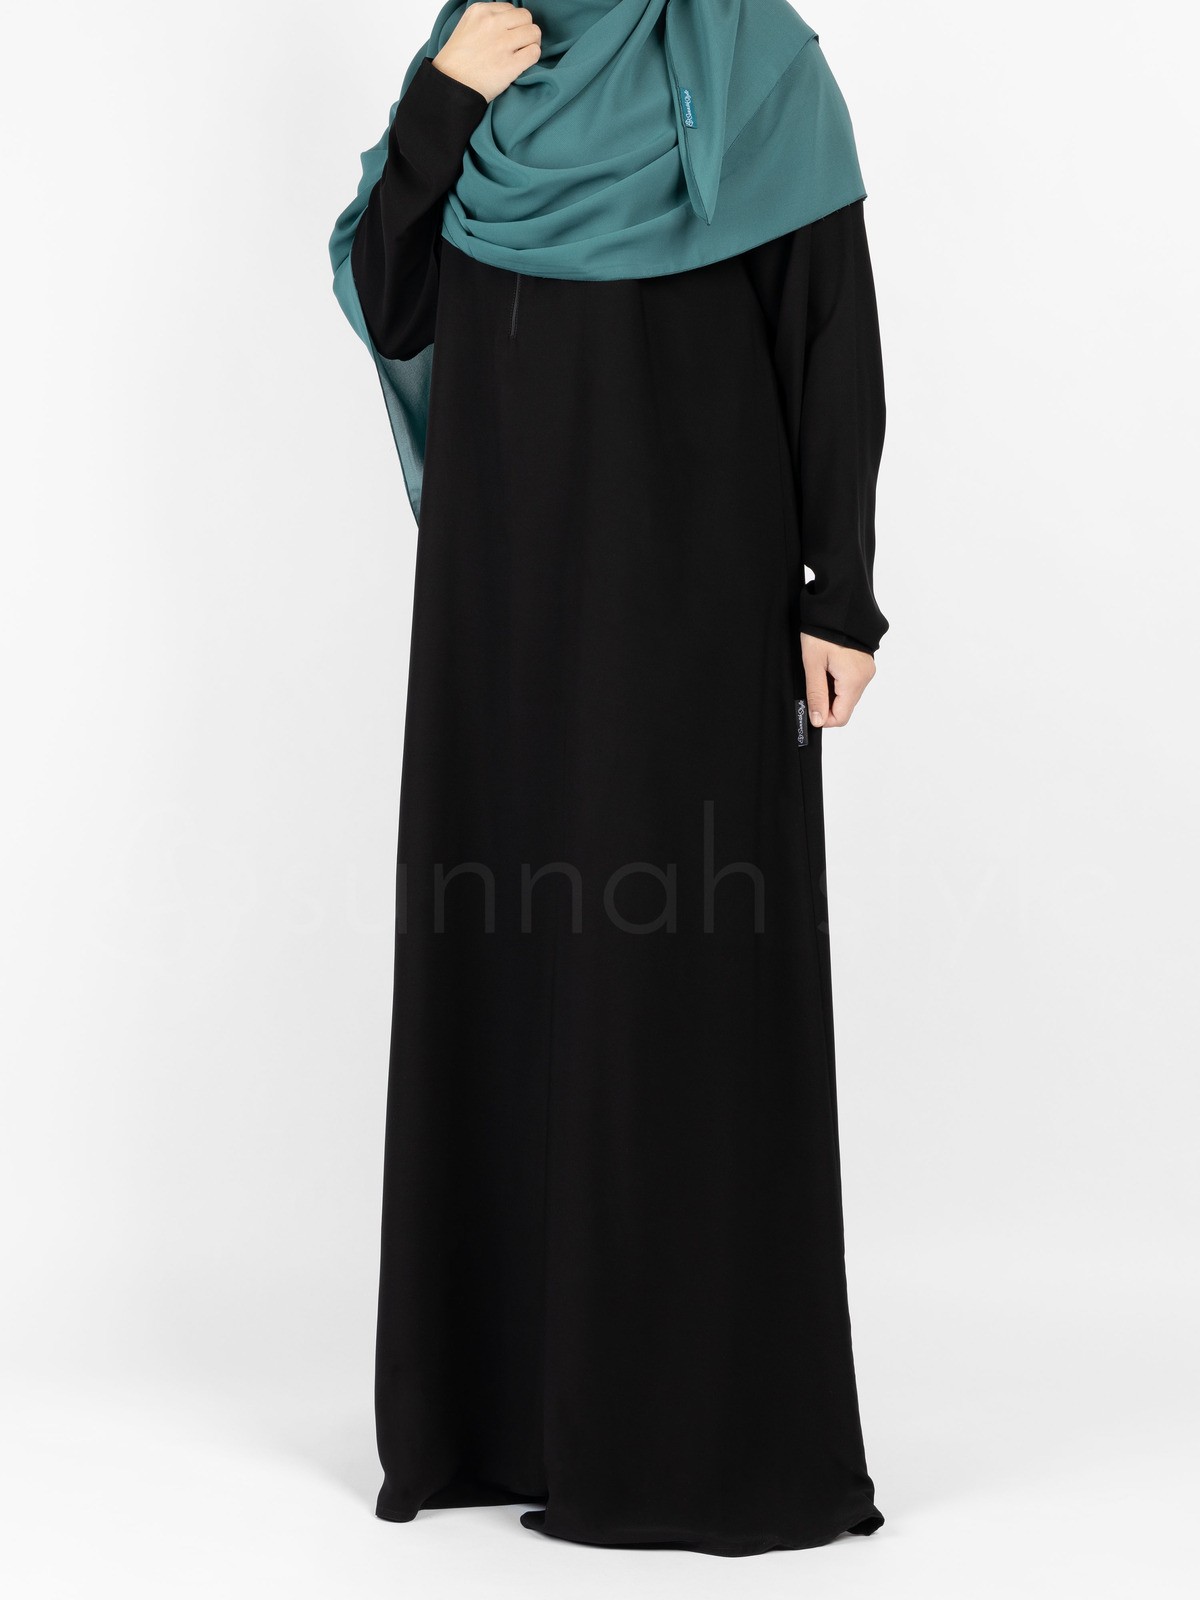 Sunnah Style - Plain Closed Abaya - SLIM (Black)